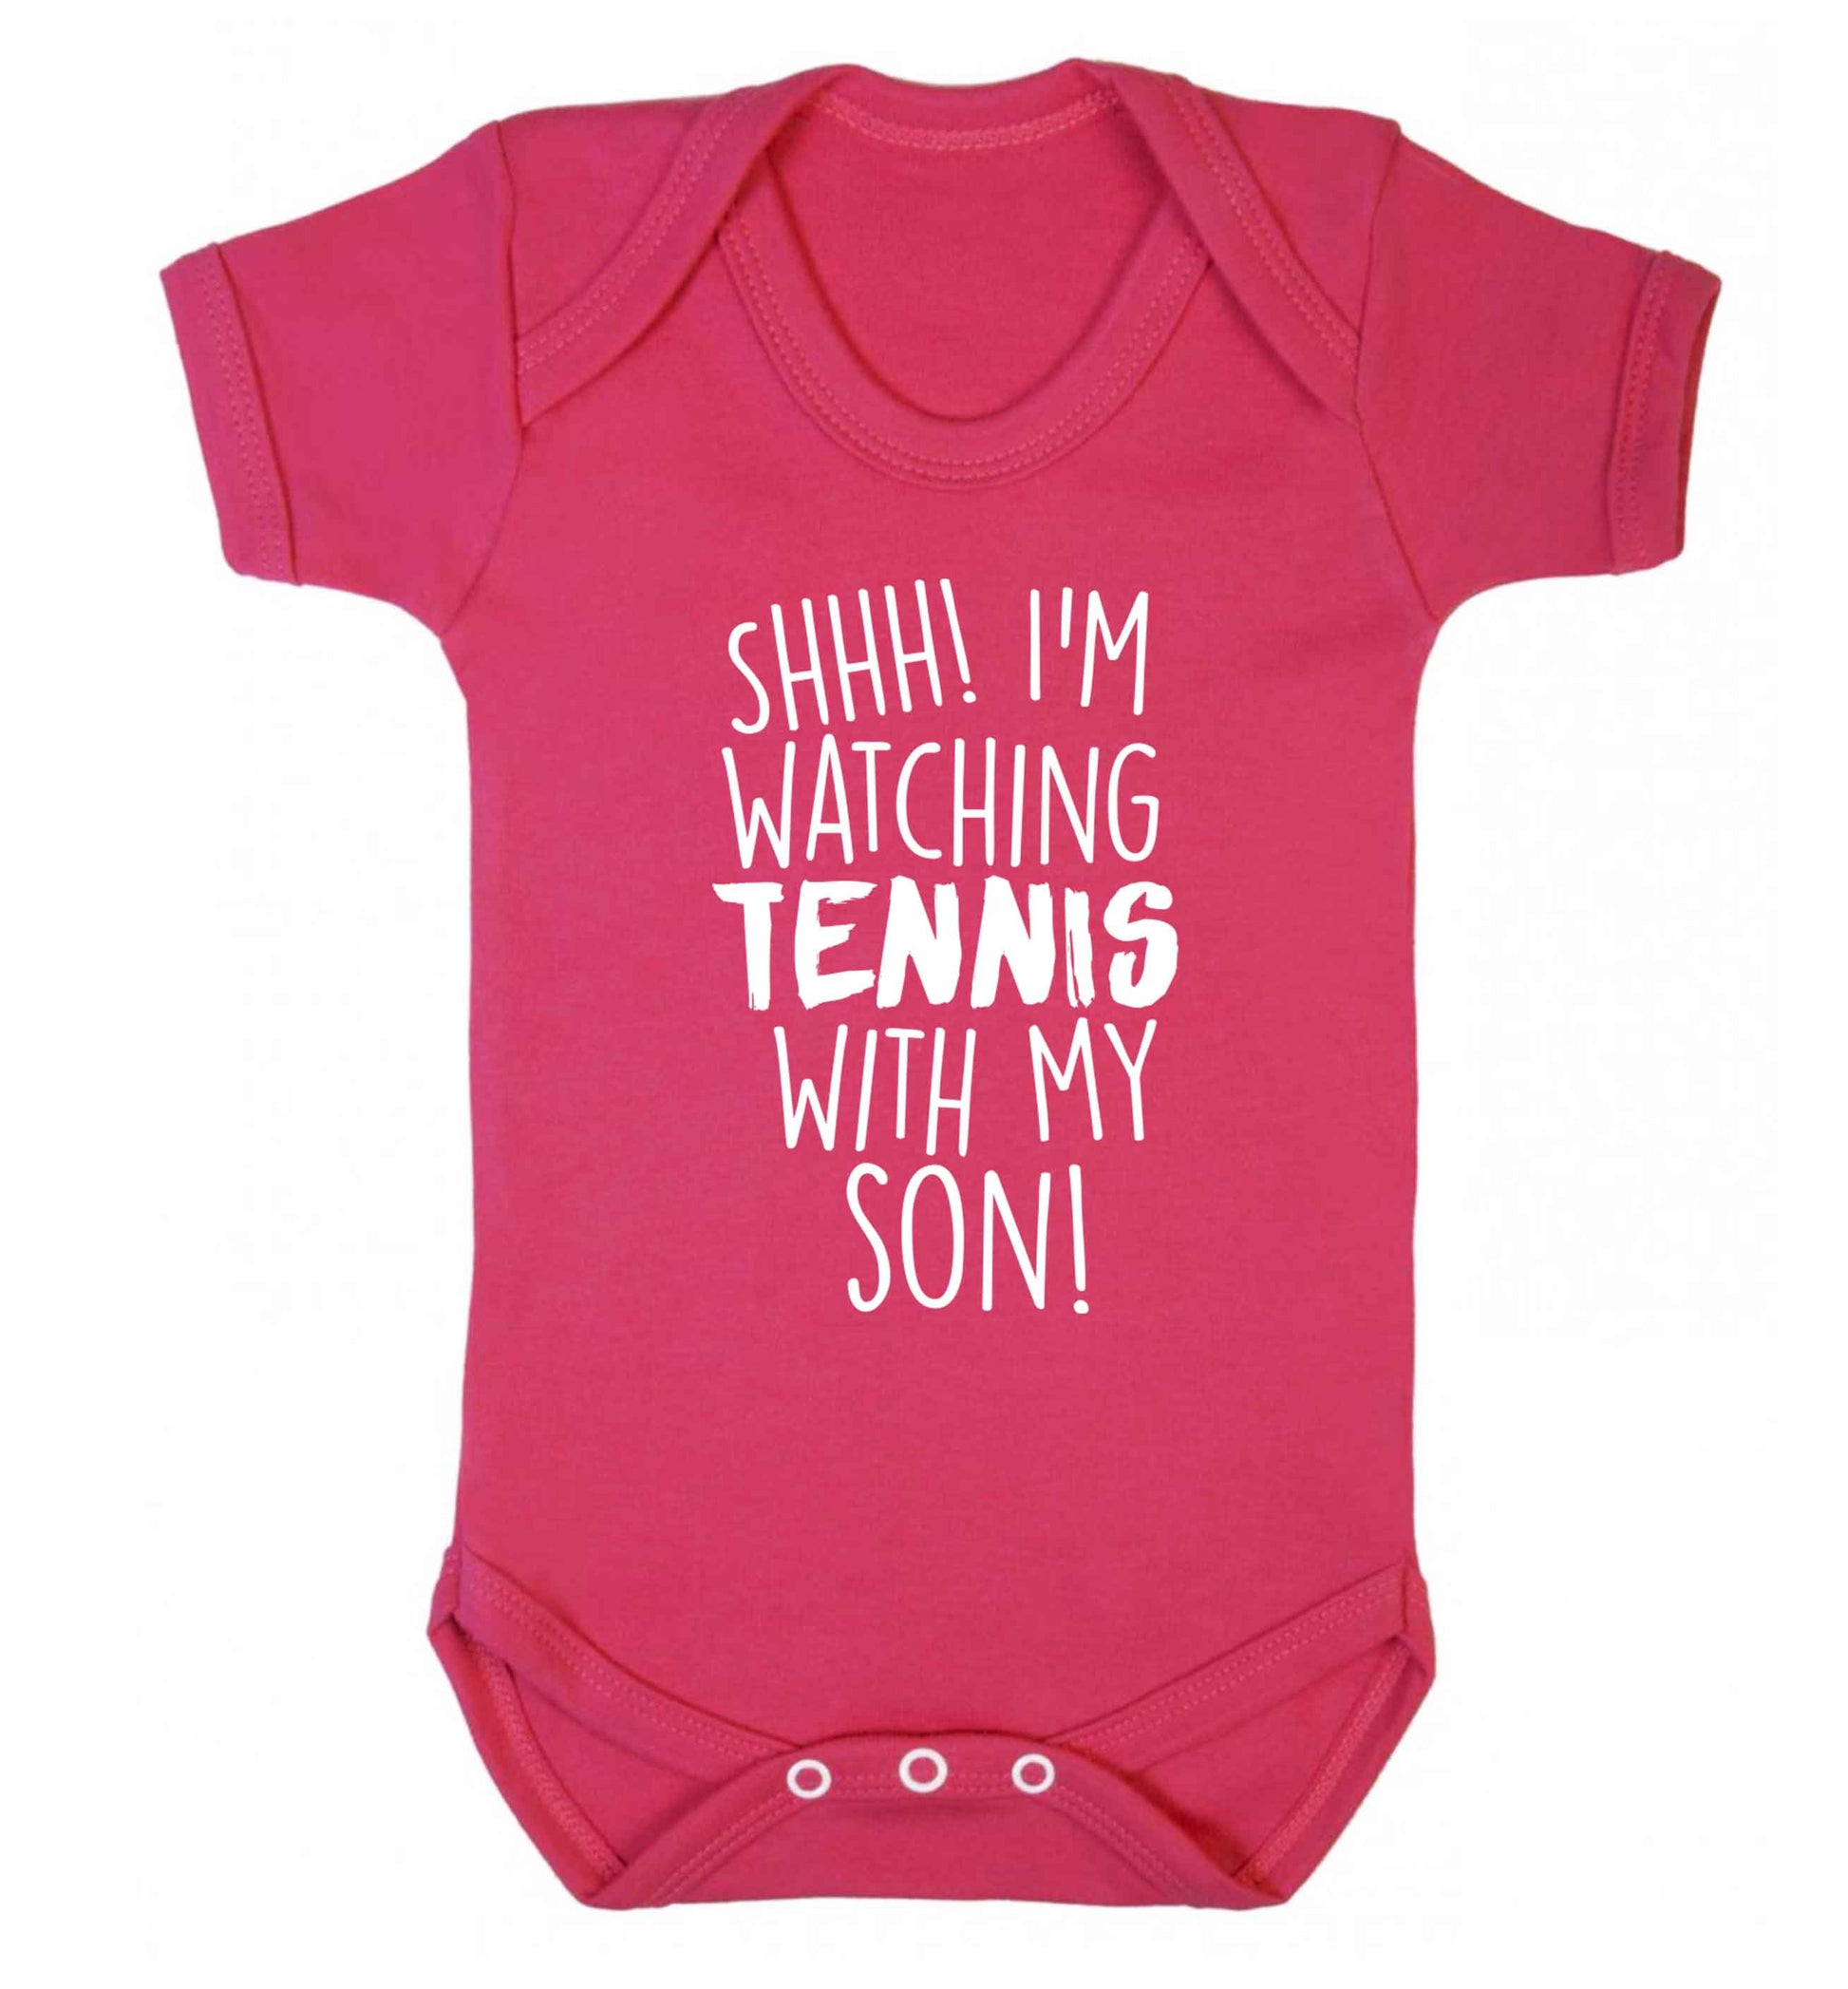 Shh! I'm watching tennis with my son! Baby Vest dark pink 18-24 months